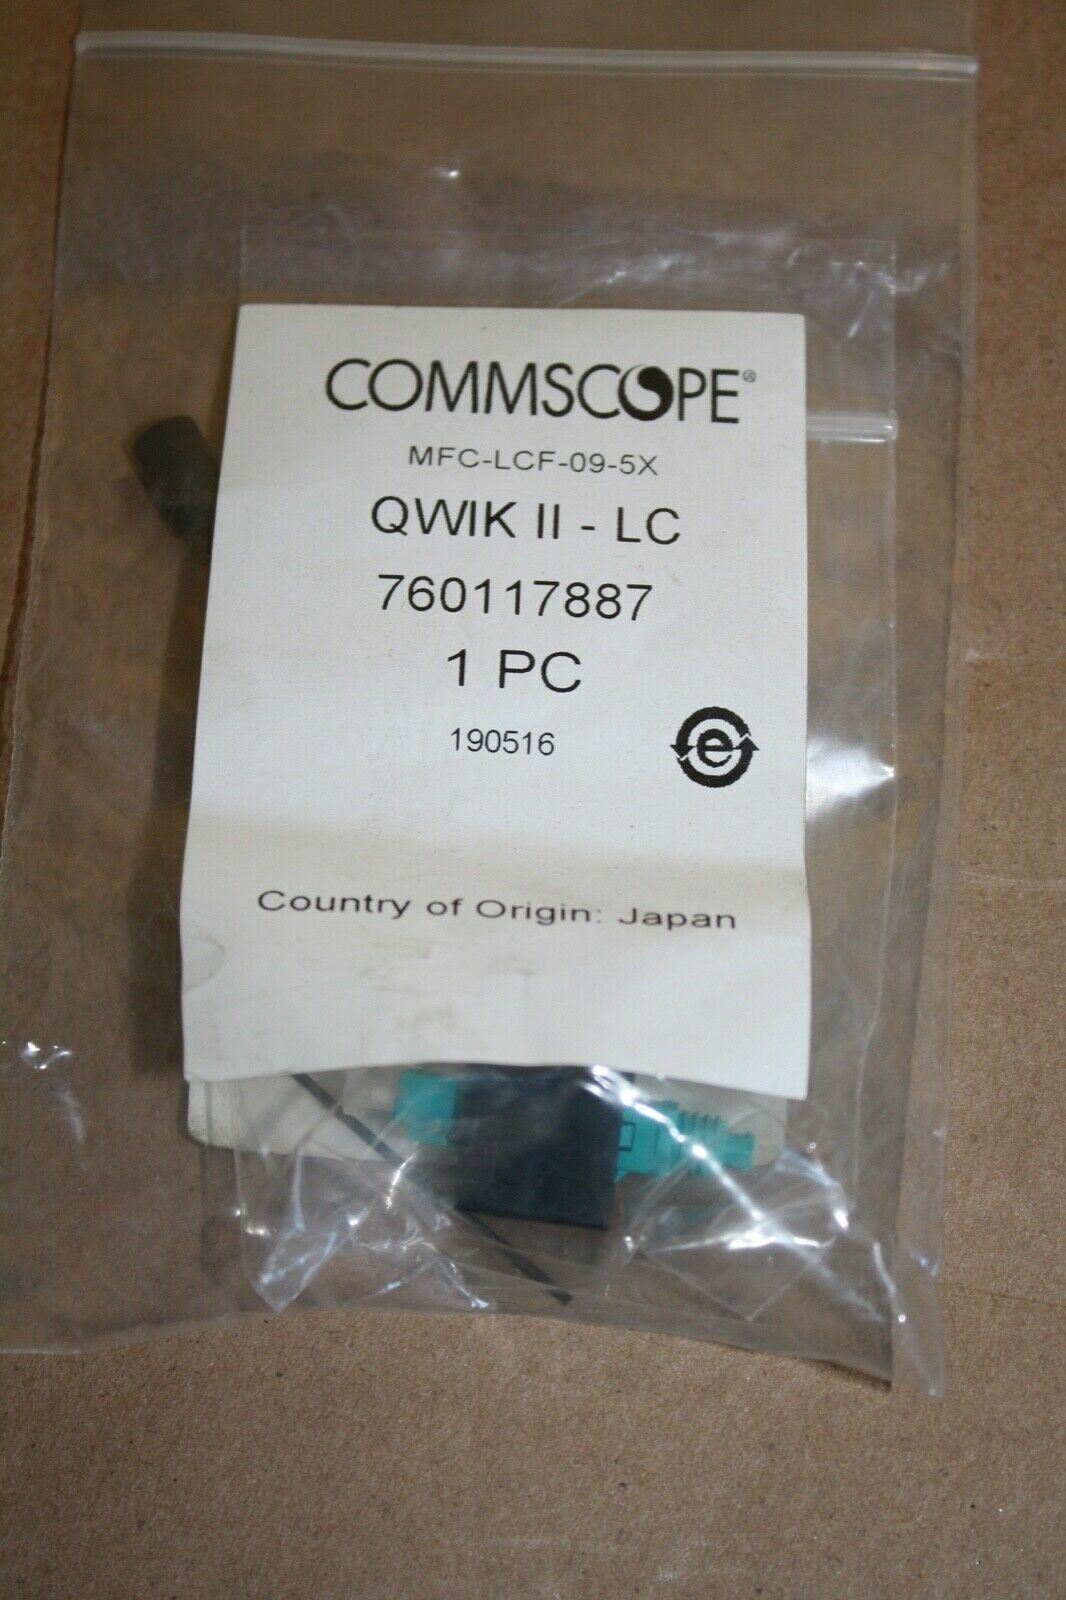 COMMSCOPE MFC-LCF-09-5X QWIK II - LC 760117887